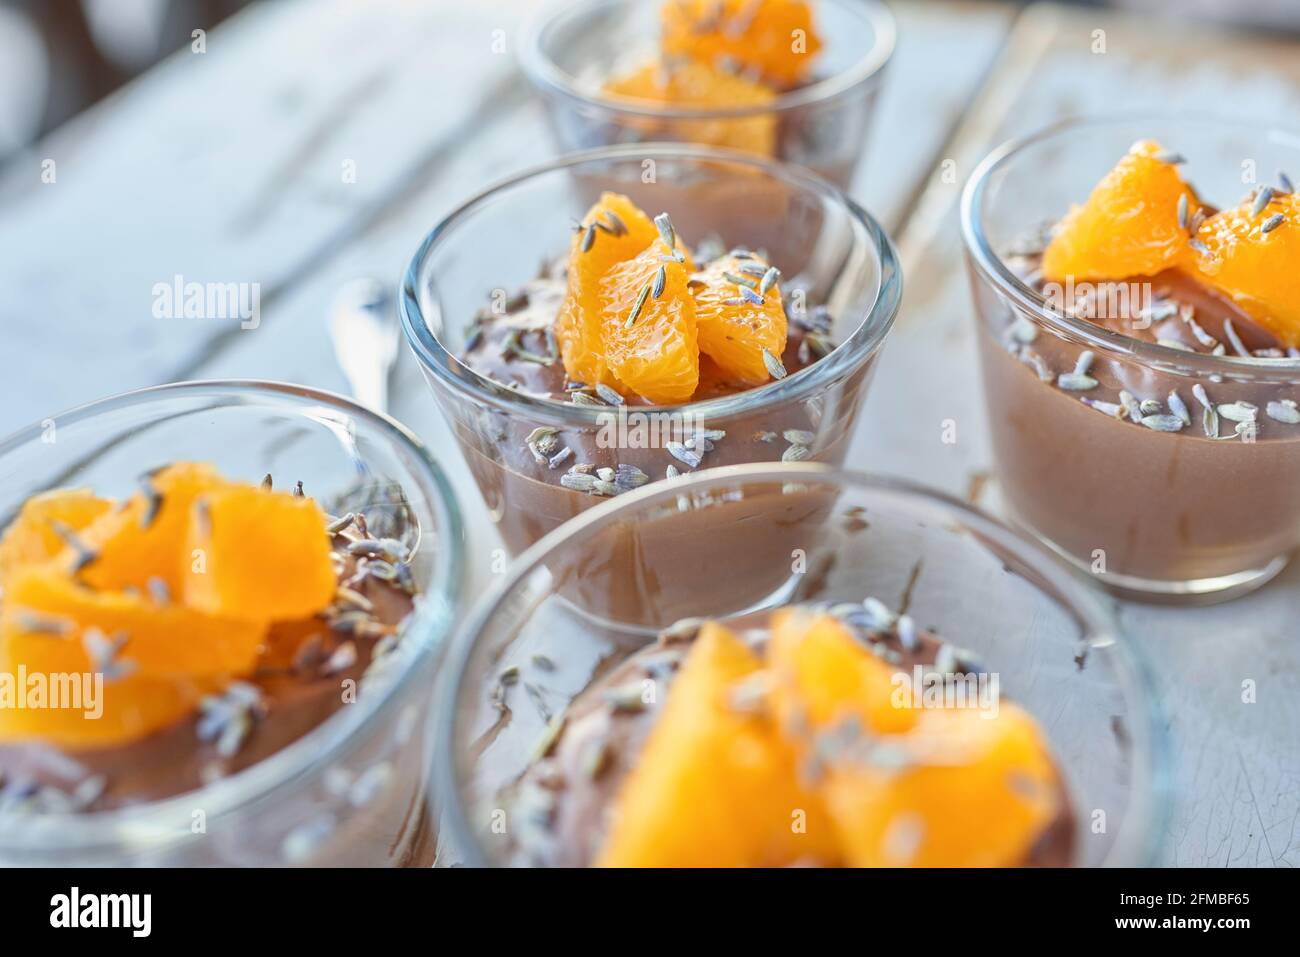 Ayurvedische Küche - Schokoladenmousse mit seidenem Tofu, dekoriert mit Orangenfilets und Lavendelblüten, gefüllte kleine Glasschüsseln stehen auf einem weißen Holztisch Stockfoto